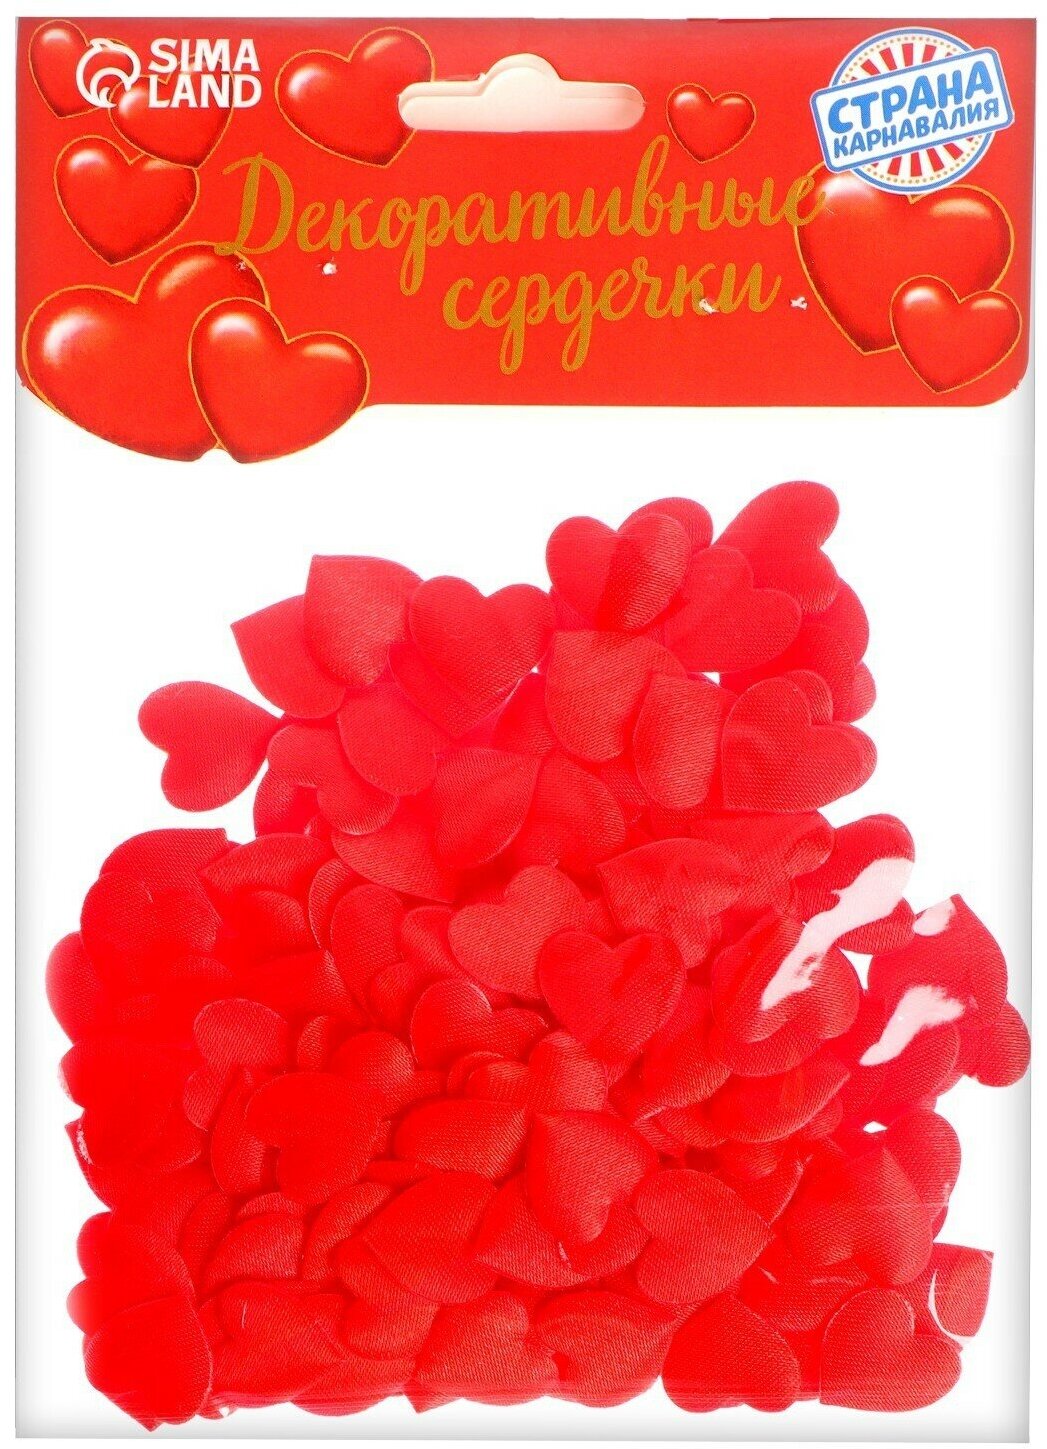 Сердечки декоративные, набор 200 шт, 1 см, цвет красный